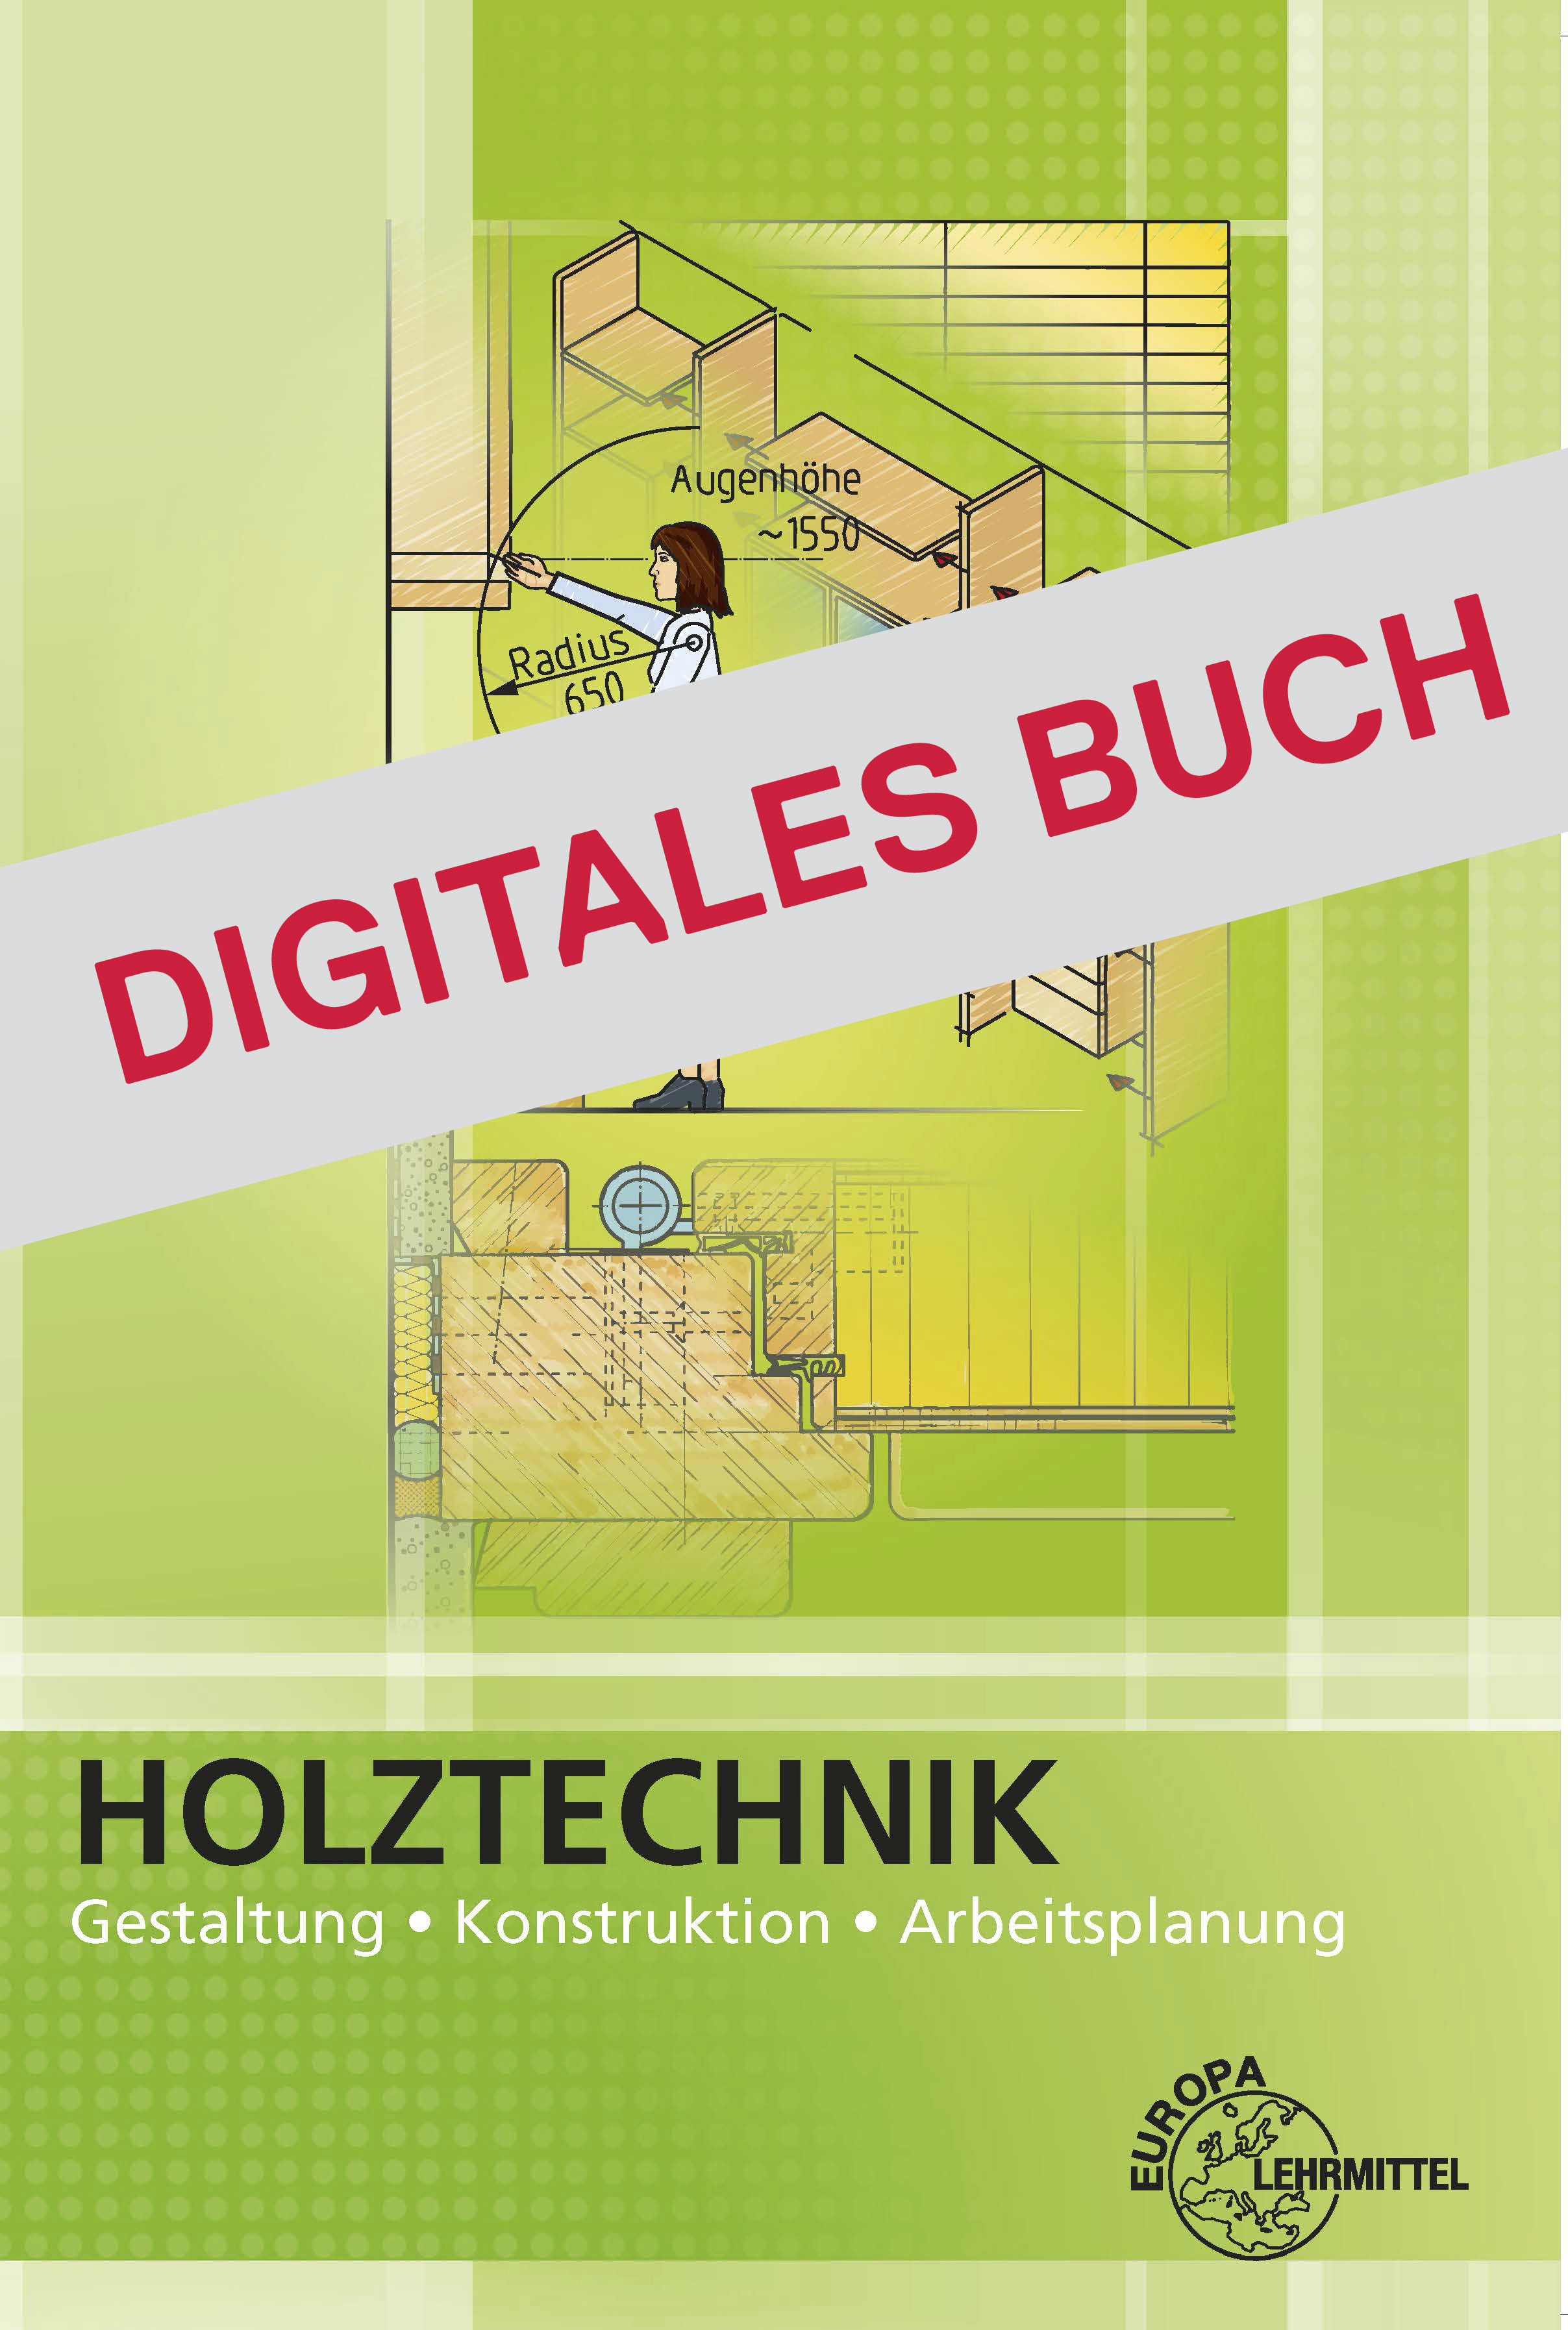 Holztechnik Gestaltung, Konstruktion und Arbeitsplanung - Digitales Buch